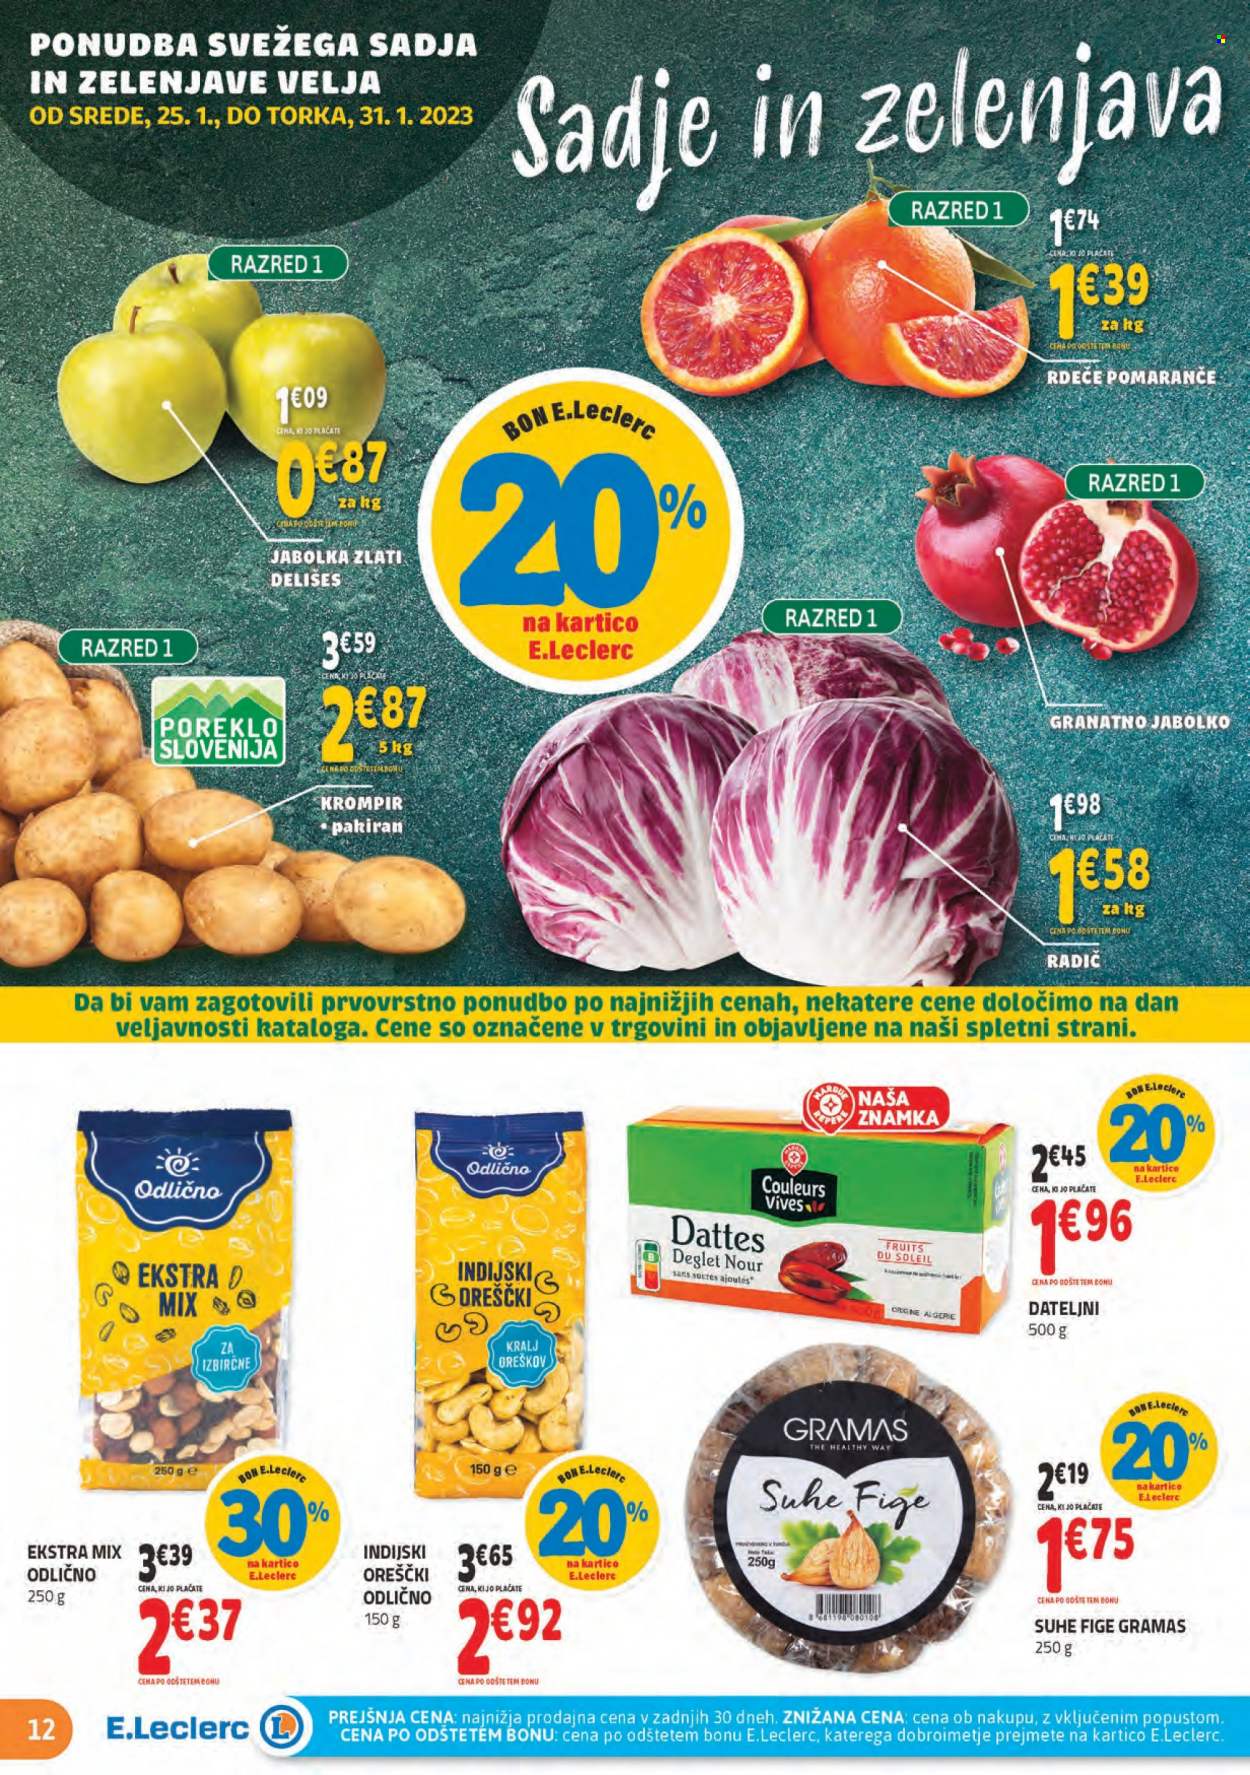 thumbnail - E.Leclerc katalog - 25.1.2023 - 4.2.2023 - Ponudba izdelkov - fige, pomaranče, krompir, dateljni, suhe fige. Stran 12.